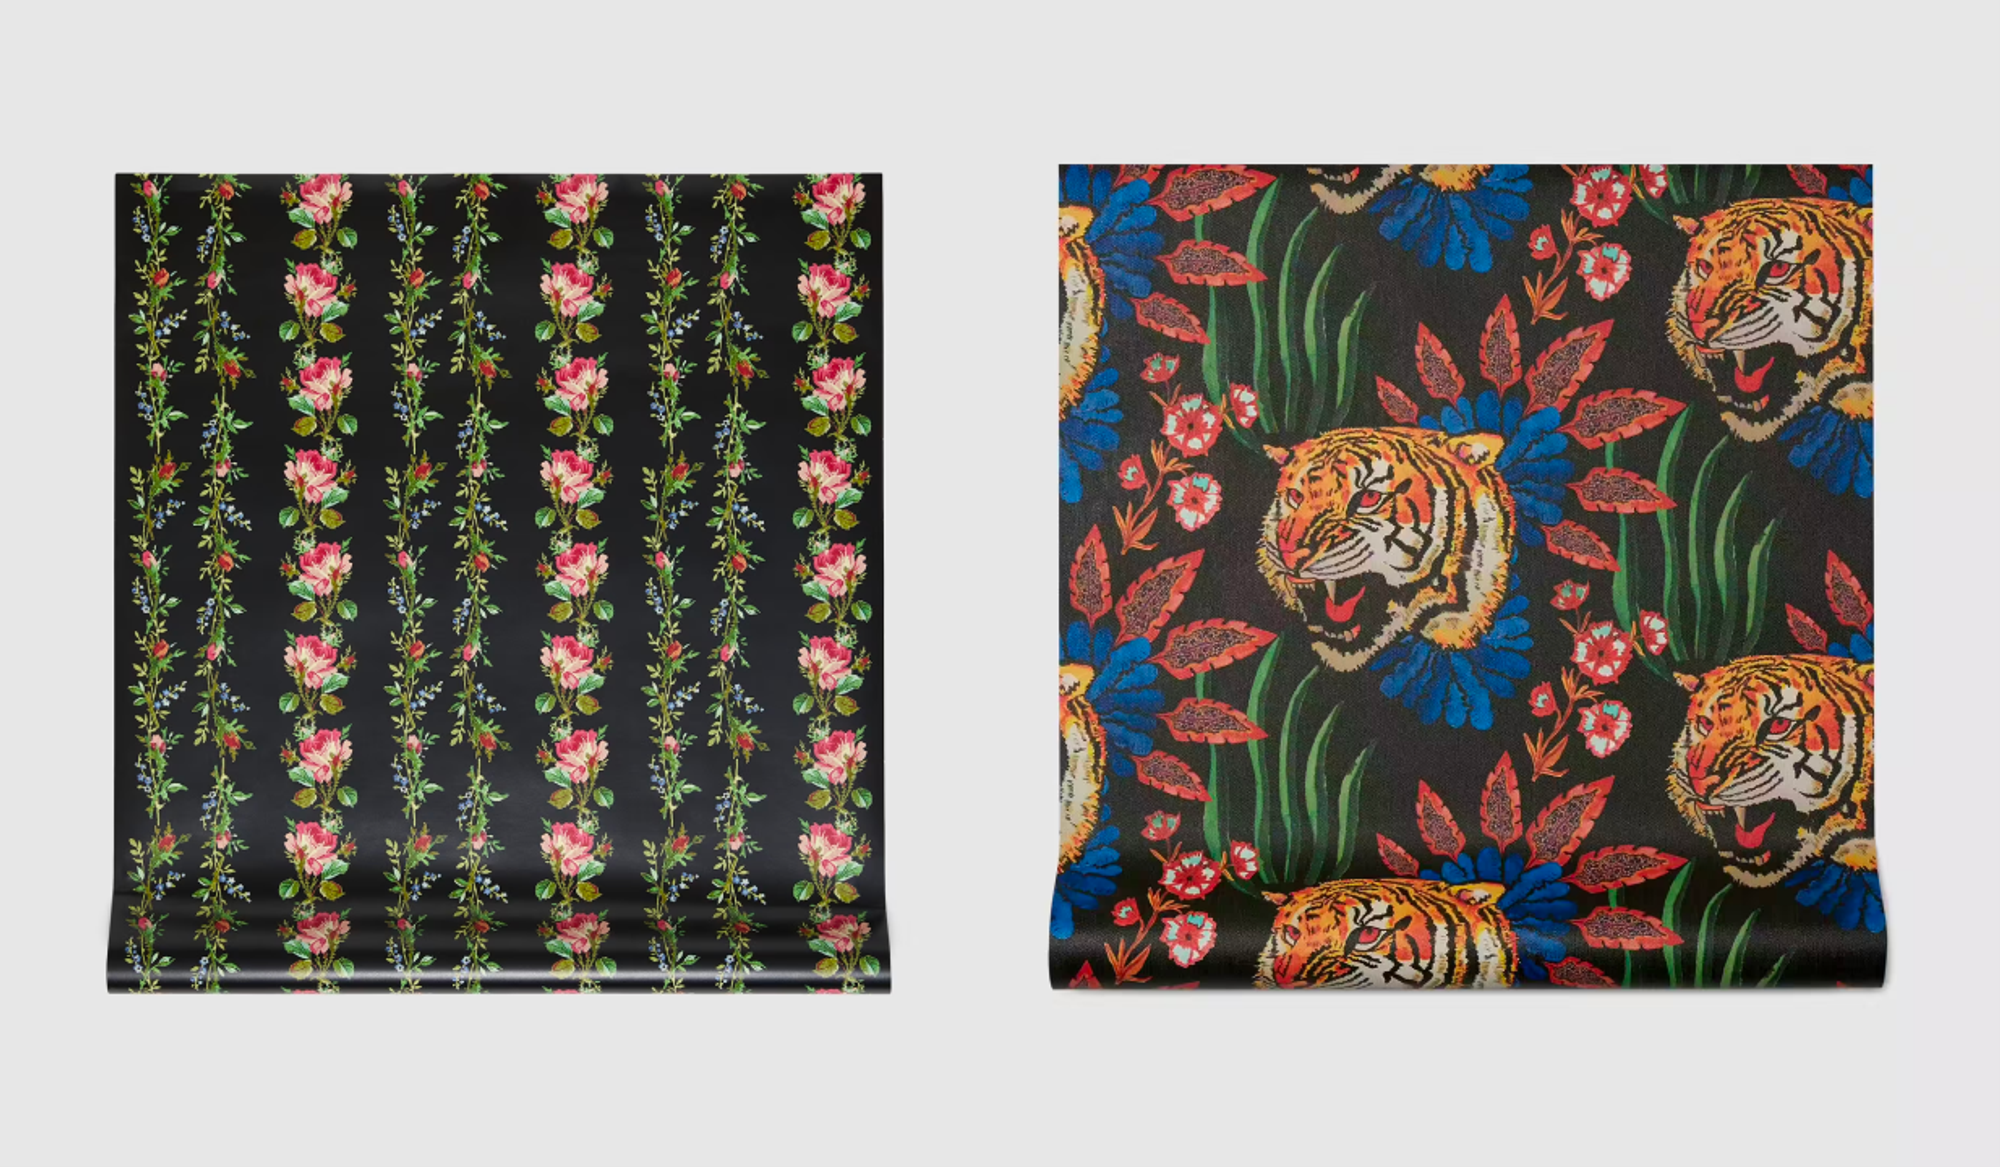 (좌) Roses print wallpaper (우) Tiger Leaf print wallpaper by GUCCI © GUCCI